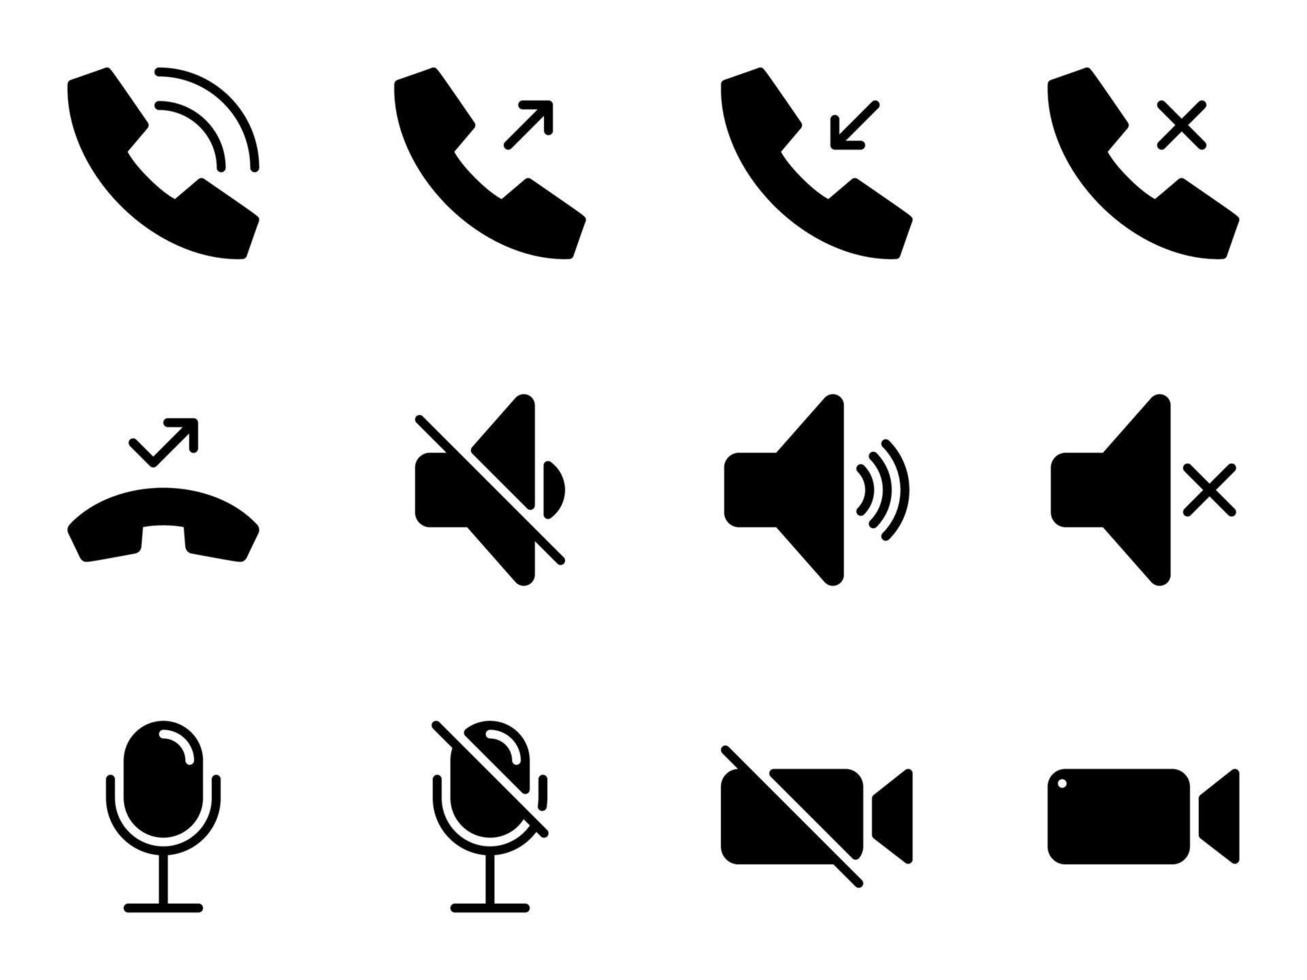 conjunto de ícones do vetor preto, isolados contra um fundo branco. ilustração plana em um tema mensagens de voz, ícones da web de interface de telefone móvel